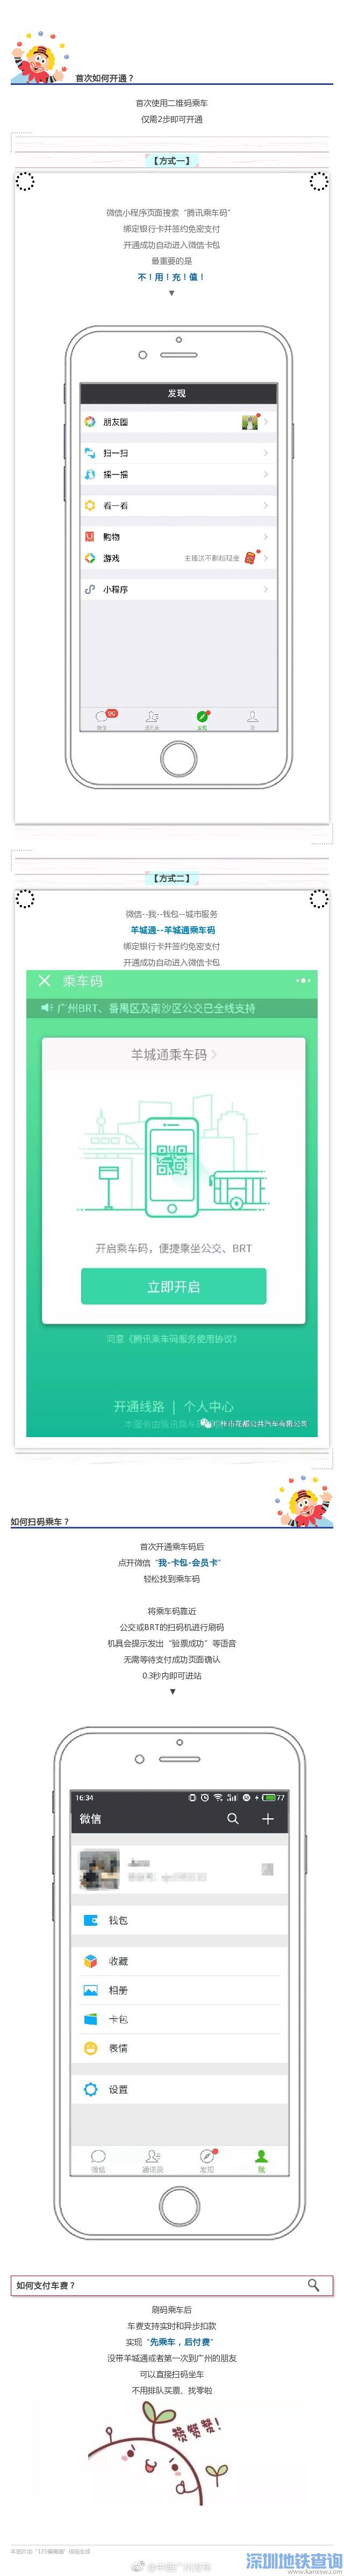 广州公交用微信扫码乘车图文教程最新